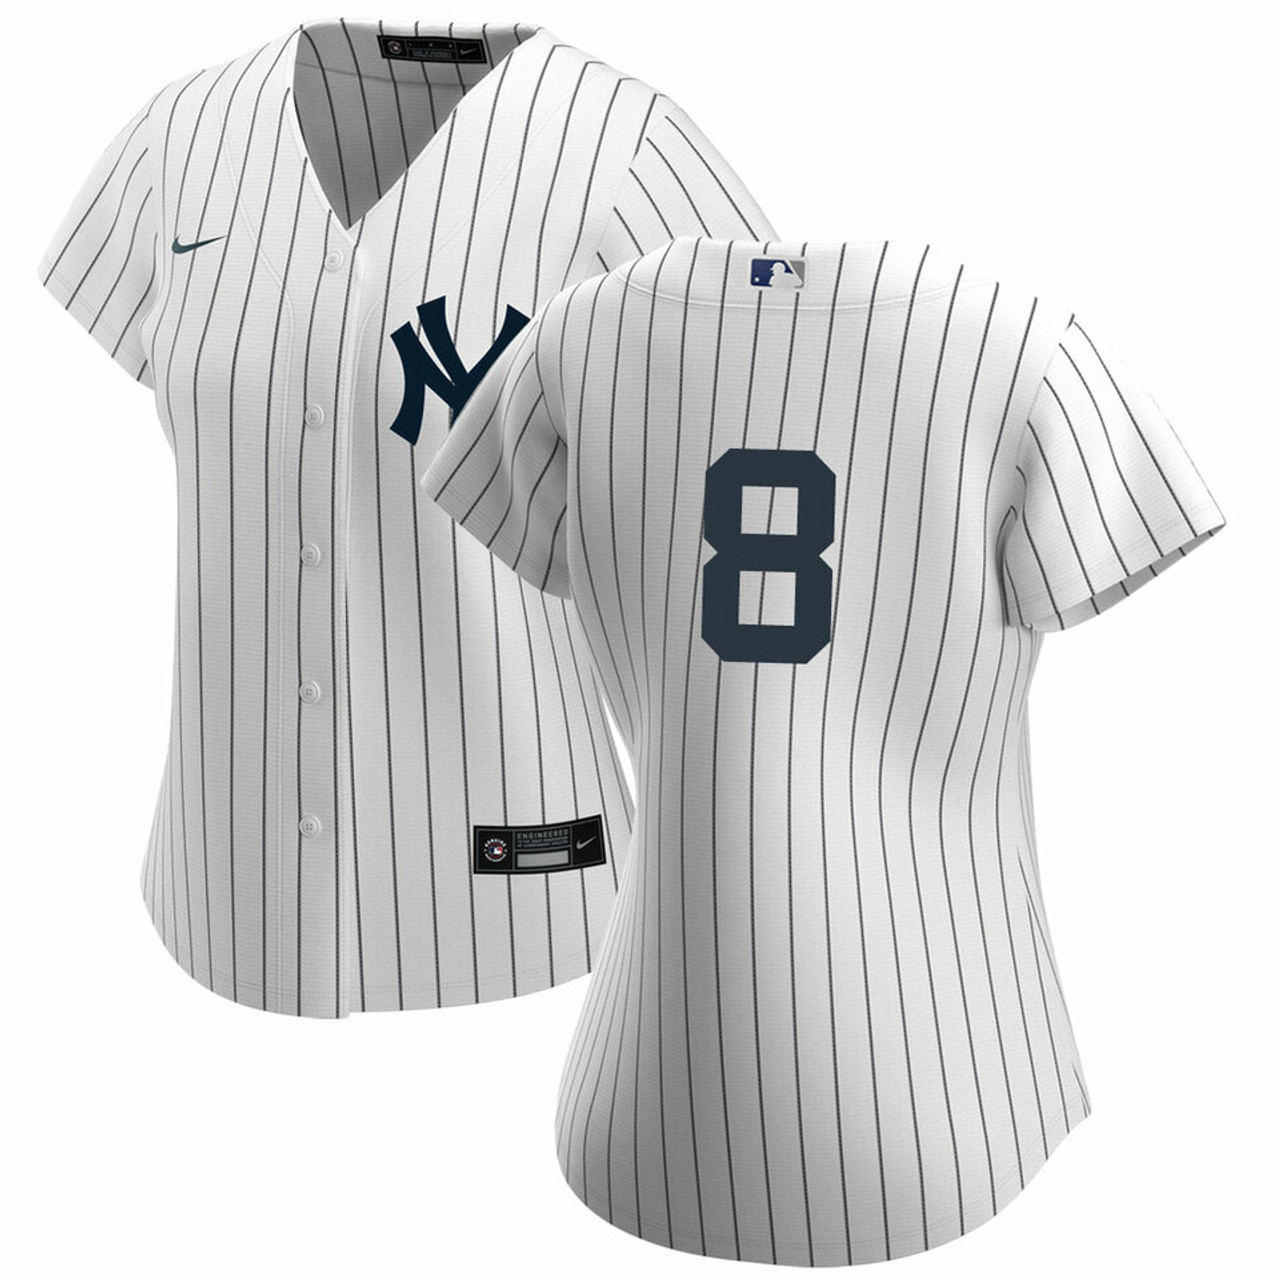 Yogi Berra Newark Bears Minor League Jersey Size 52 Russell Athletic NWT  Yankees